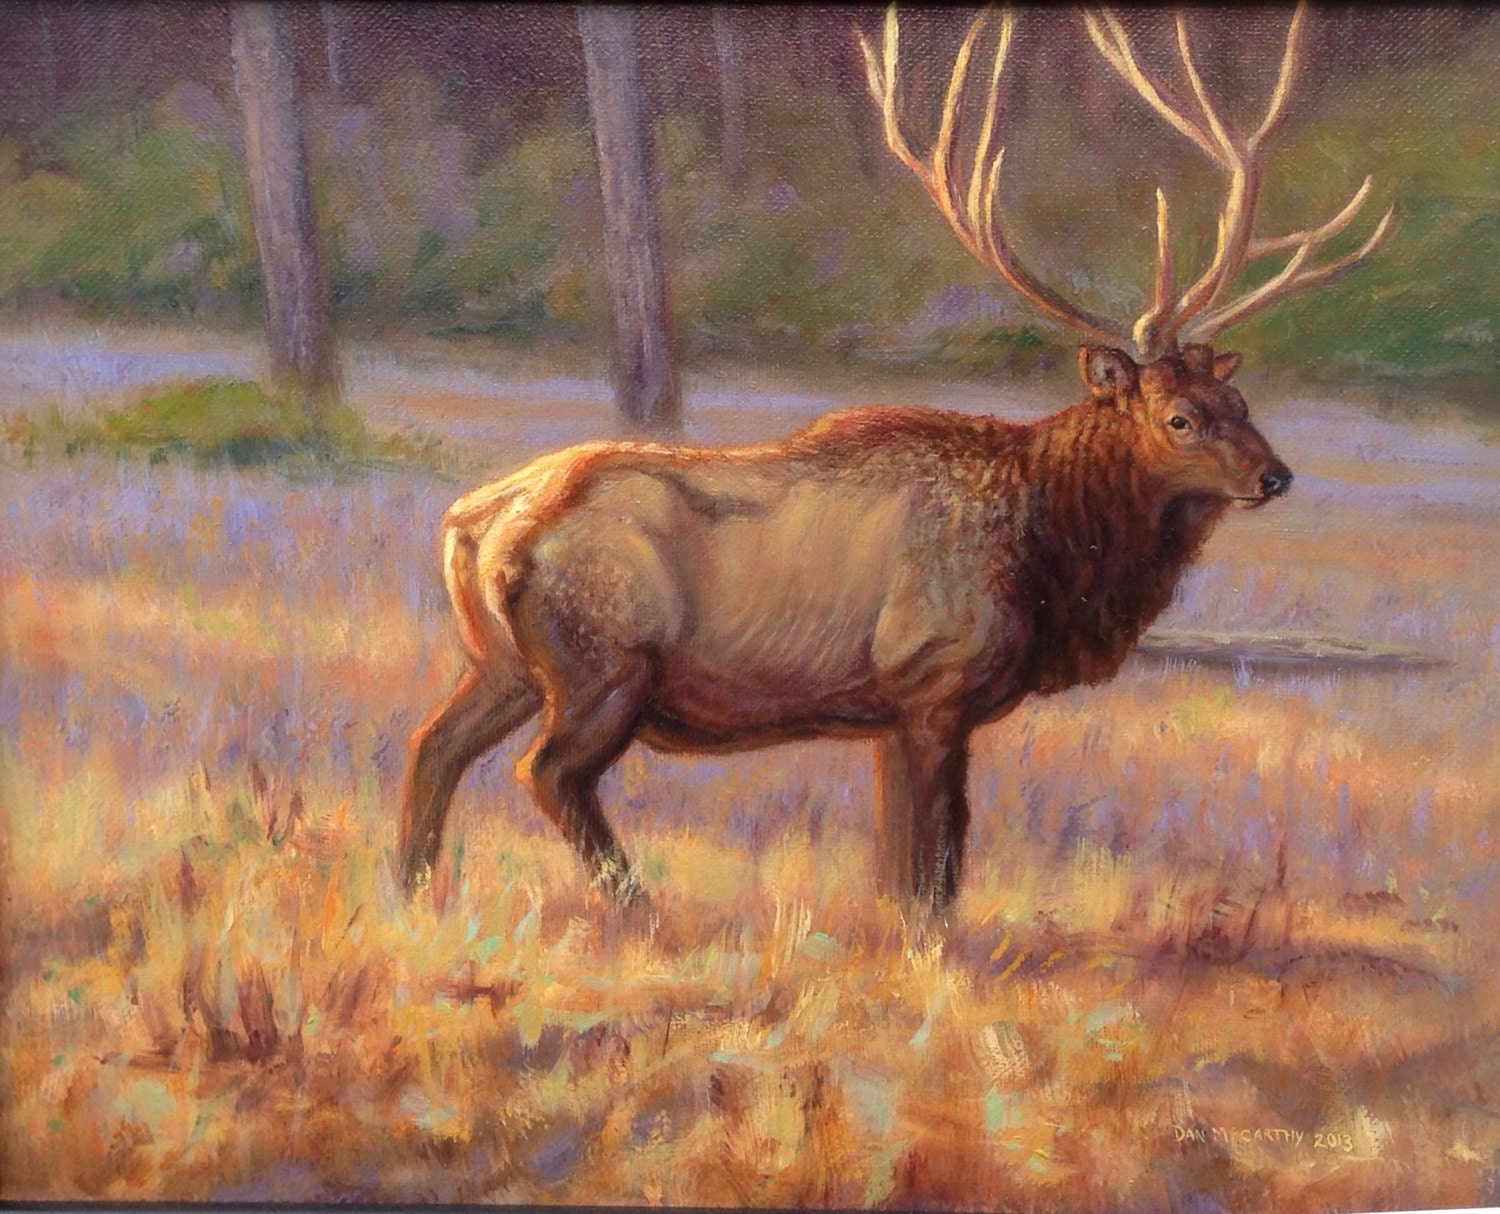 Stank Eye-Elk original oil painting by danm710 on Etsy